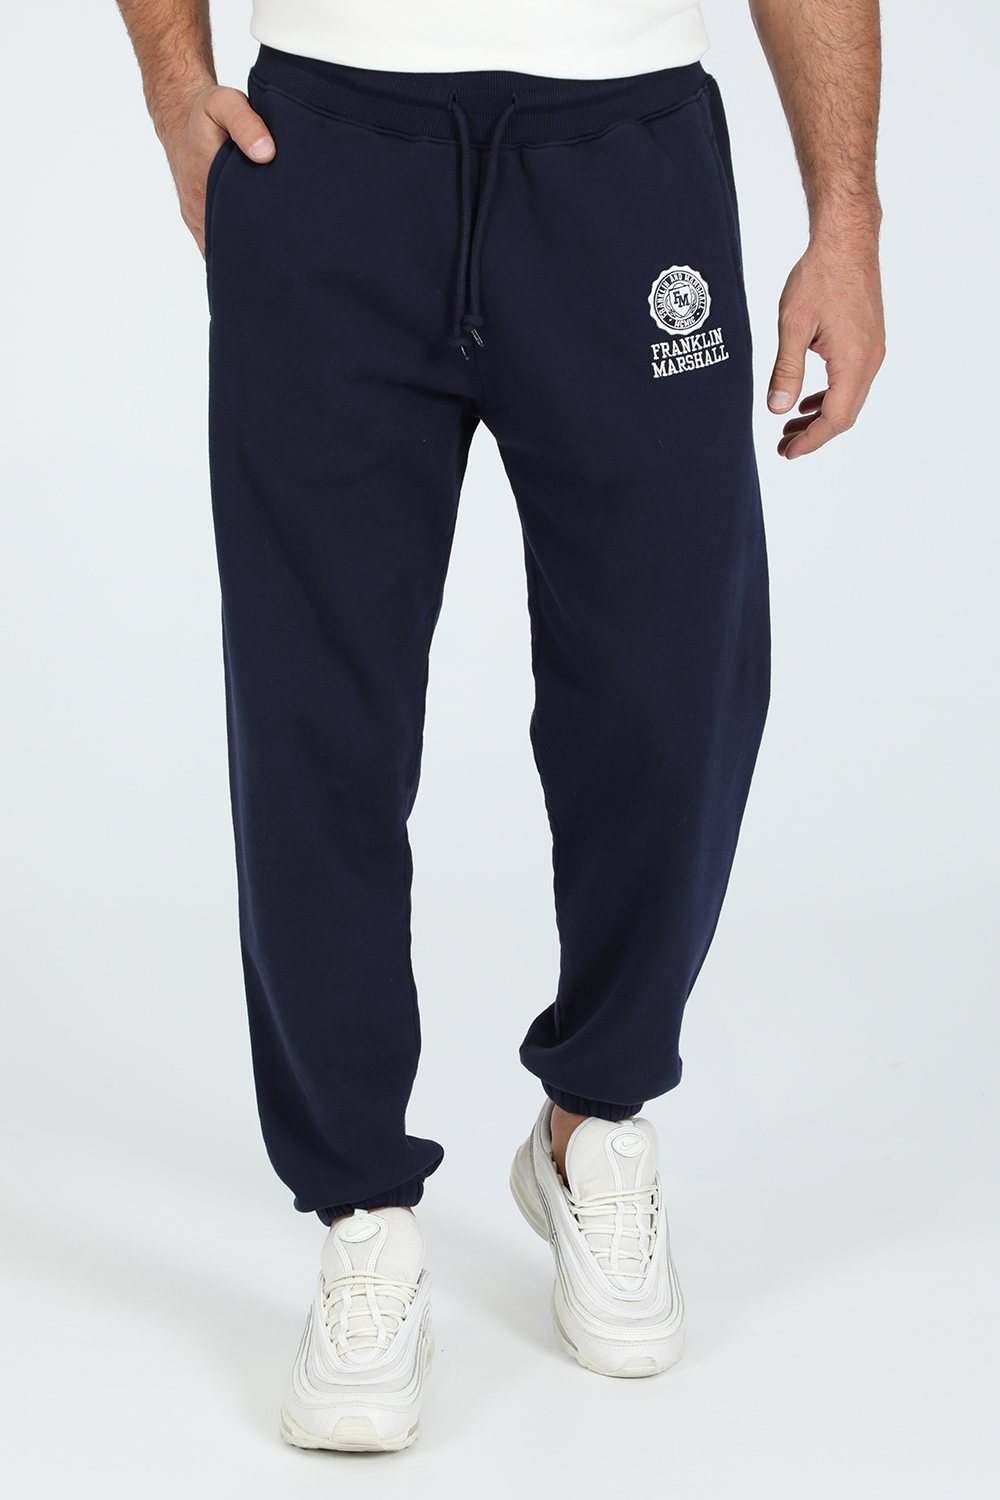 Ανδρικά/Ρούχα/Αθλητικά/Φόρμες FRANKLIN & MARSHAL - Ανδρικό παντελόνι φόρμας FRANKLIN & MARSHALL BRUSHED μπλε